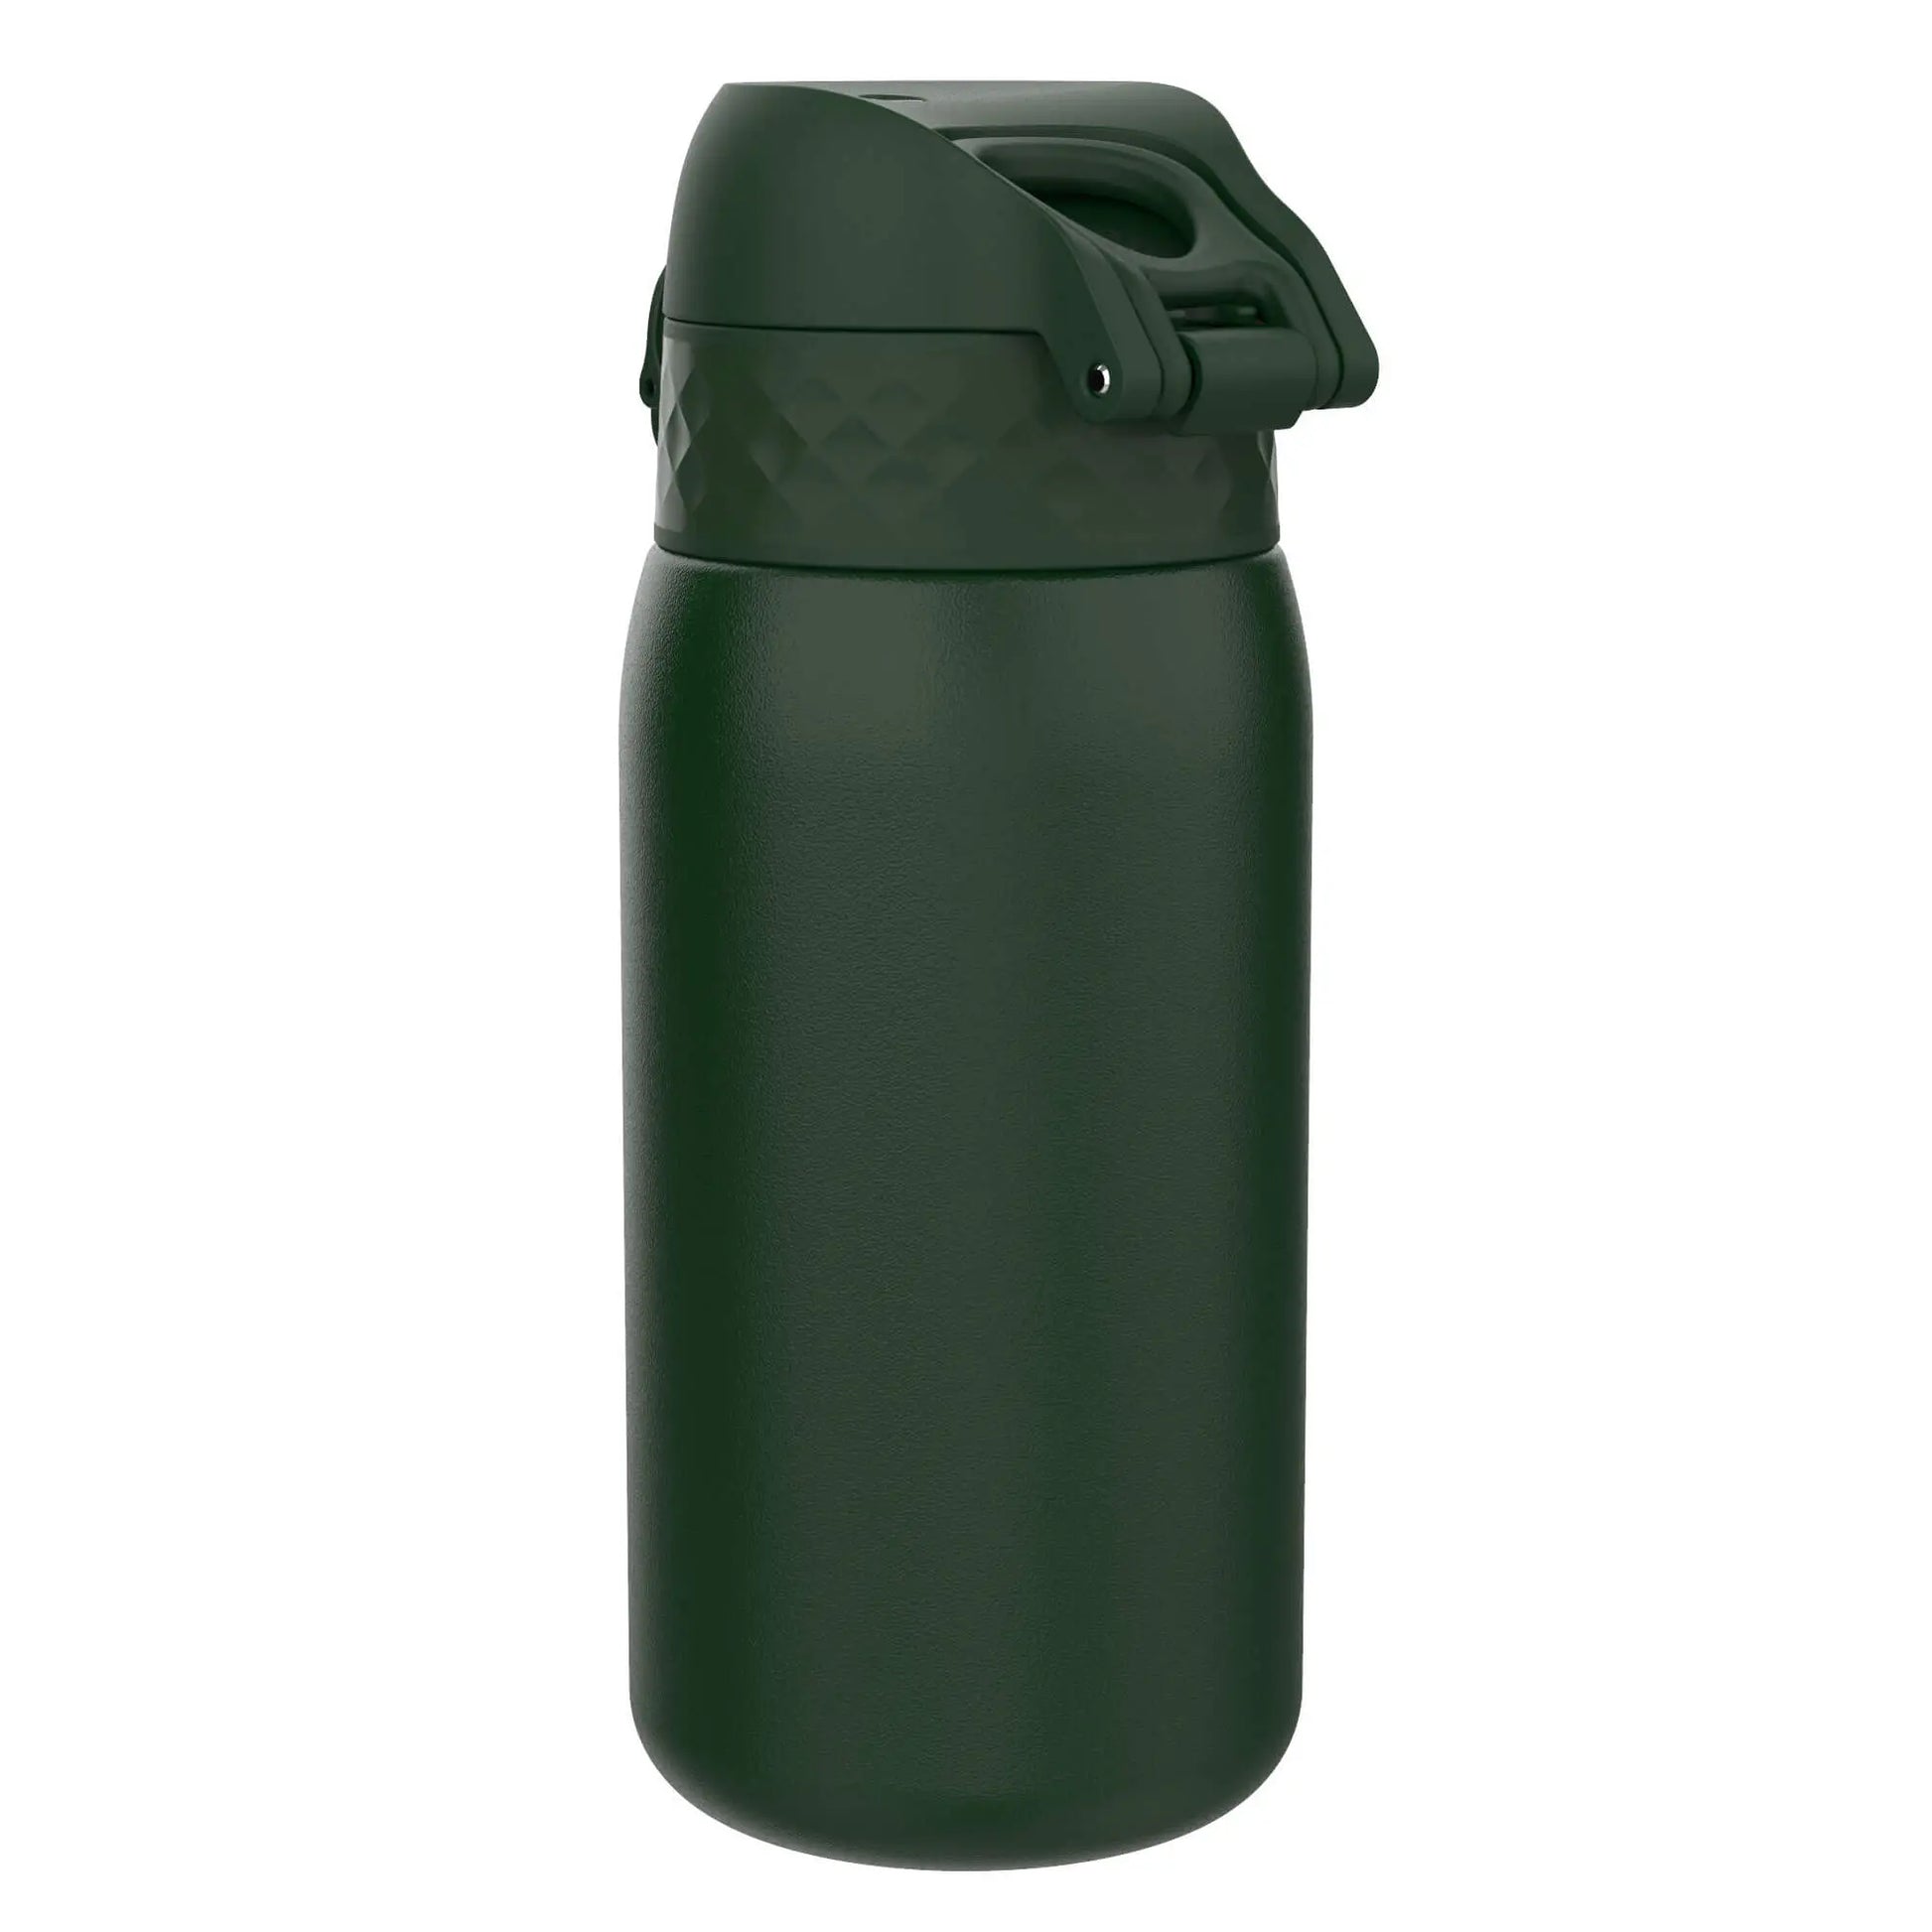 Leak Proof Kids Water Bottle, Stainless Steel, Dark Green, 400ml (13oz) Ion8